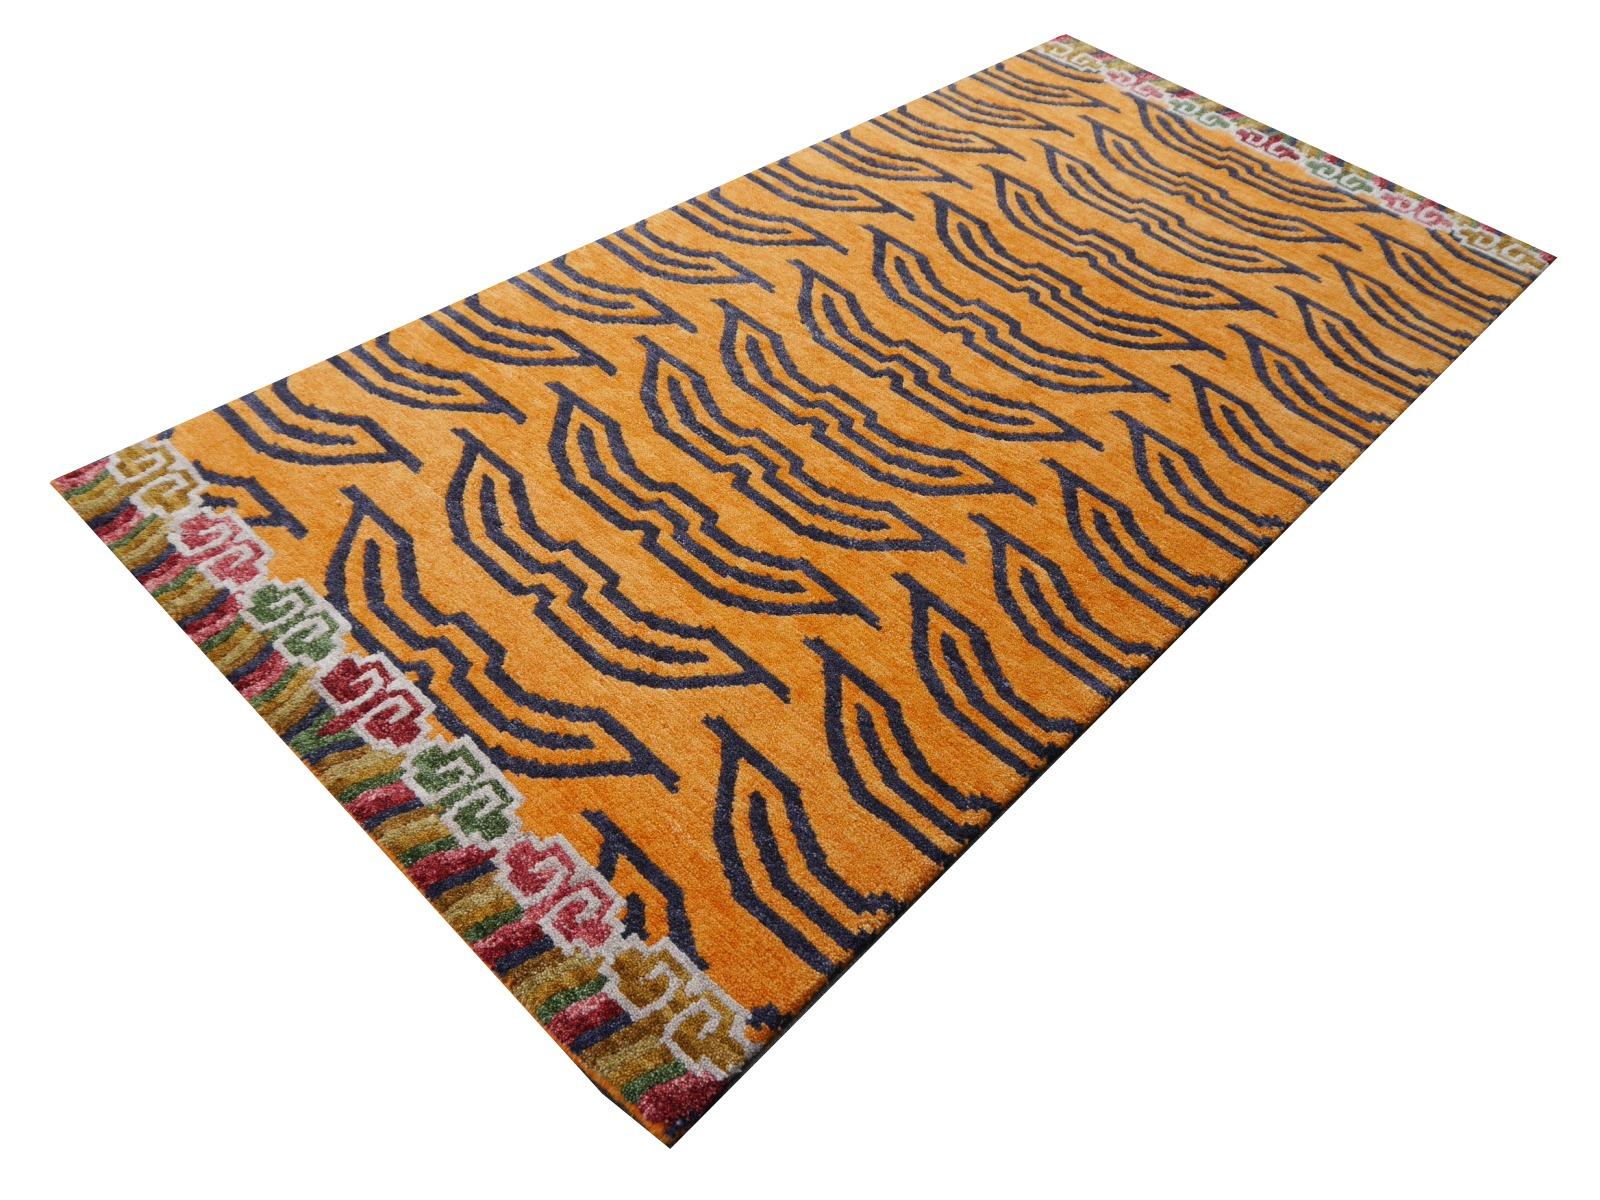 Tapis tigré tibétain, noué à la main au Népal.

Ce motif traditionnel de tapis tigré se retrouve typiquement sur les tapis anciens appelés Khaden. Il s'agit d'un petit tapis d'environ 3 x 6 pieds qui était utilisé au Tibet pour décorer des